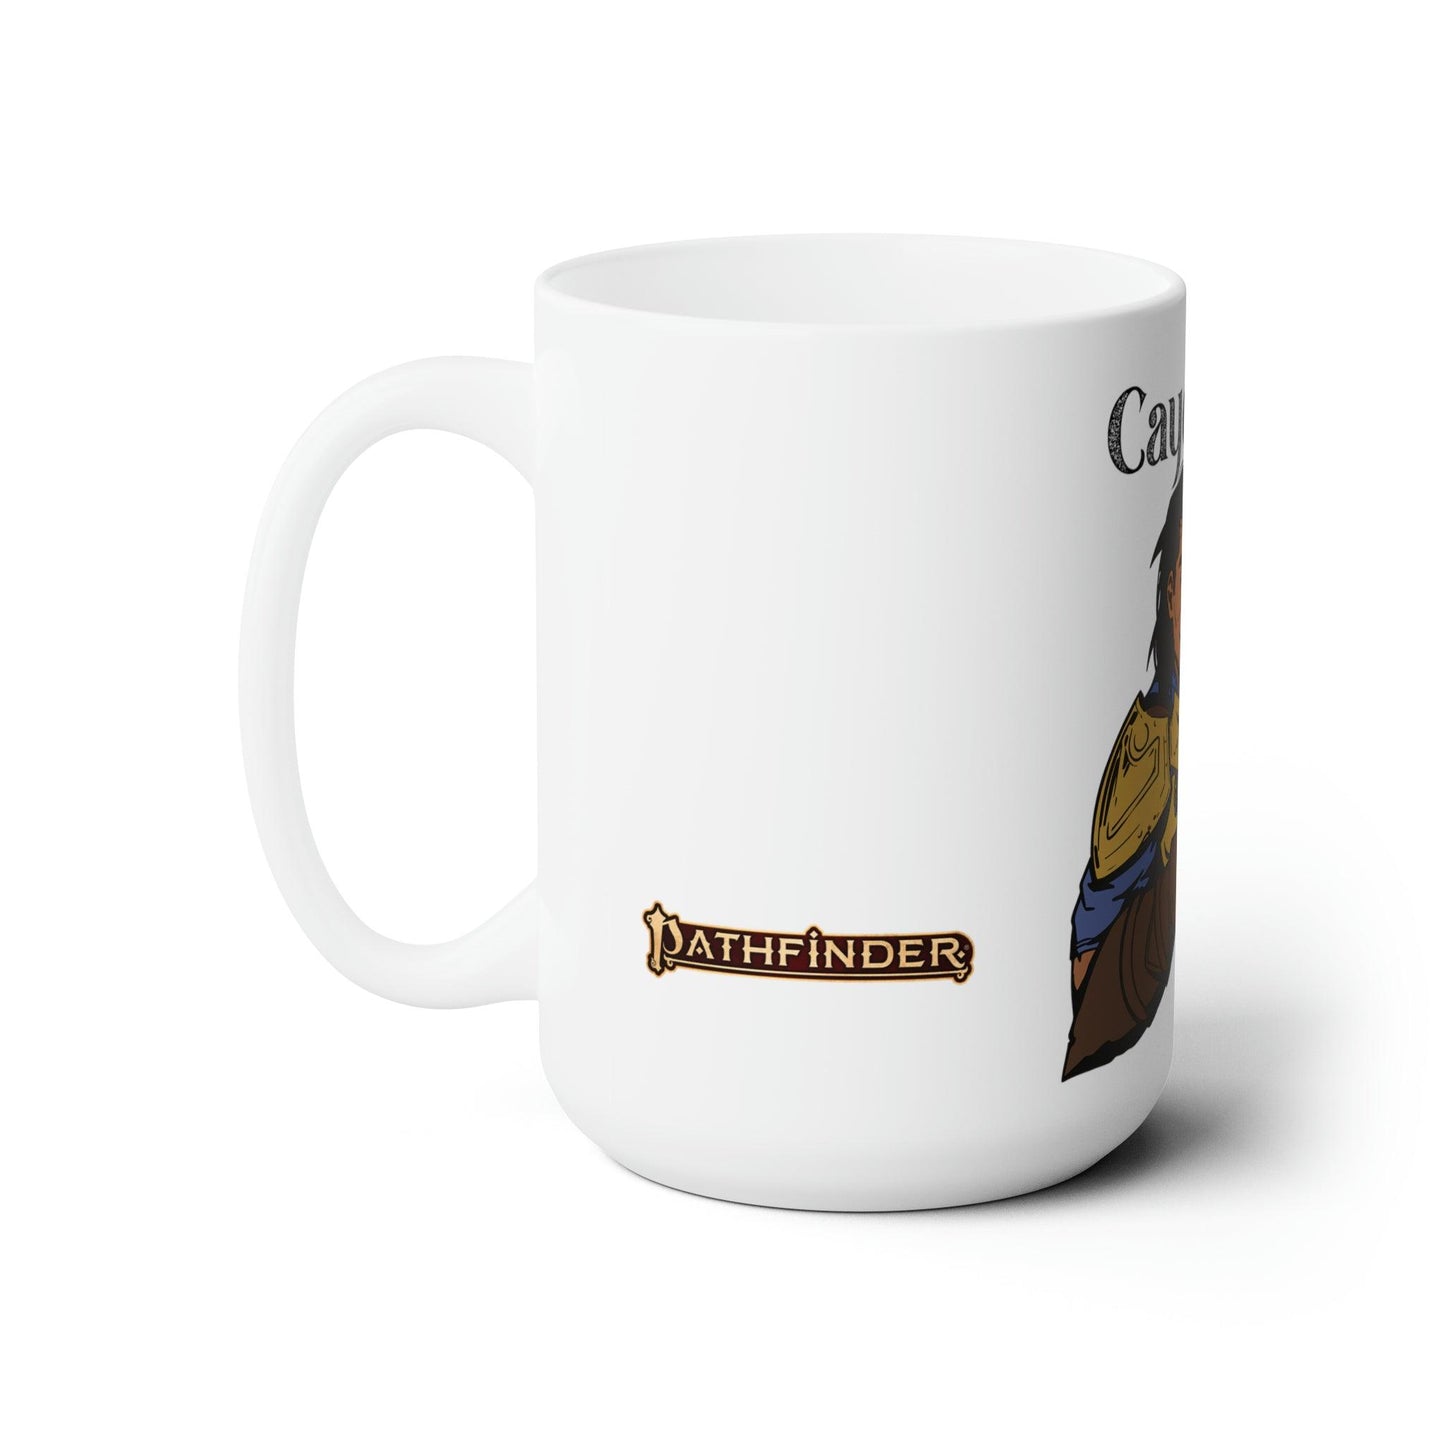 Cayden's Cup Mug - Pathfinder - Geek Grind Coffee